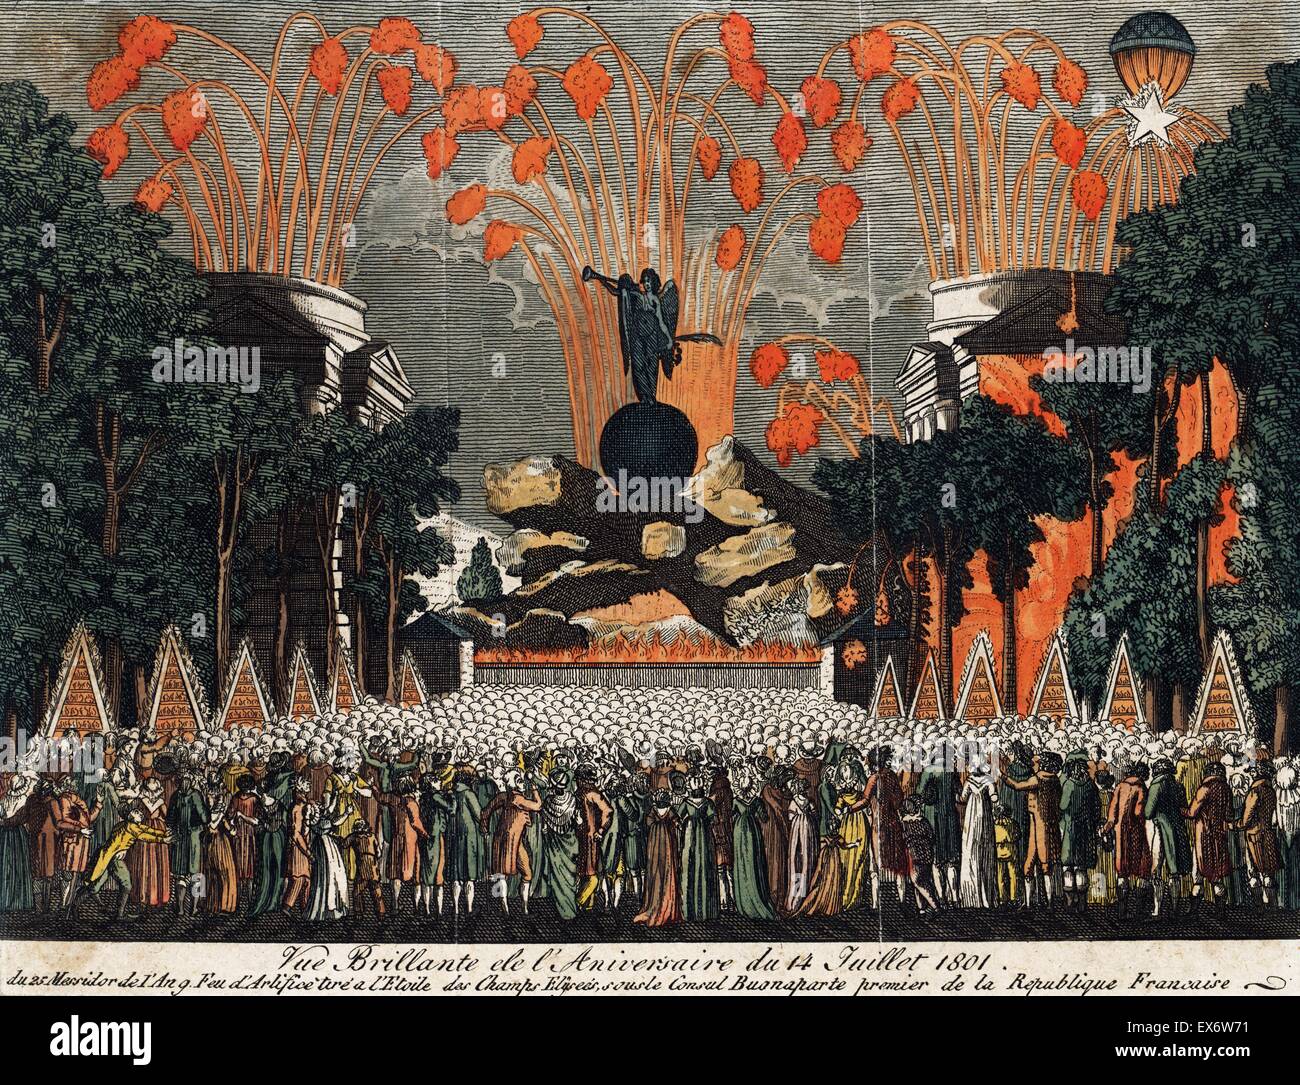 Handkolorierten Radierung Darstellung einer Menschenmenge anzeigen Feuerwerk am Nationalfeiertag feiern in Paris. Datiert 1801 Stockfoto